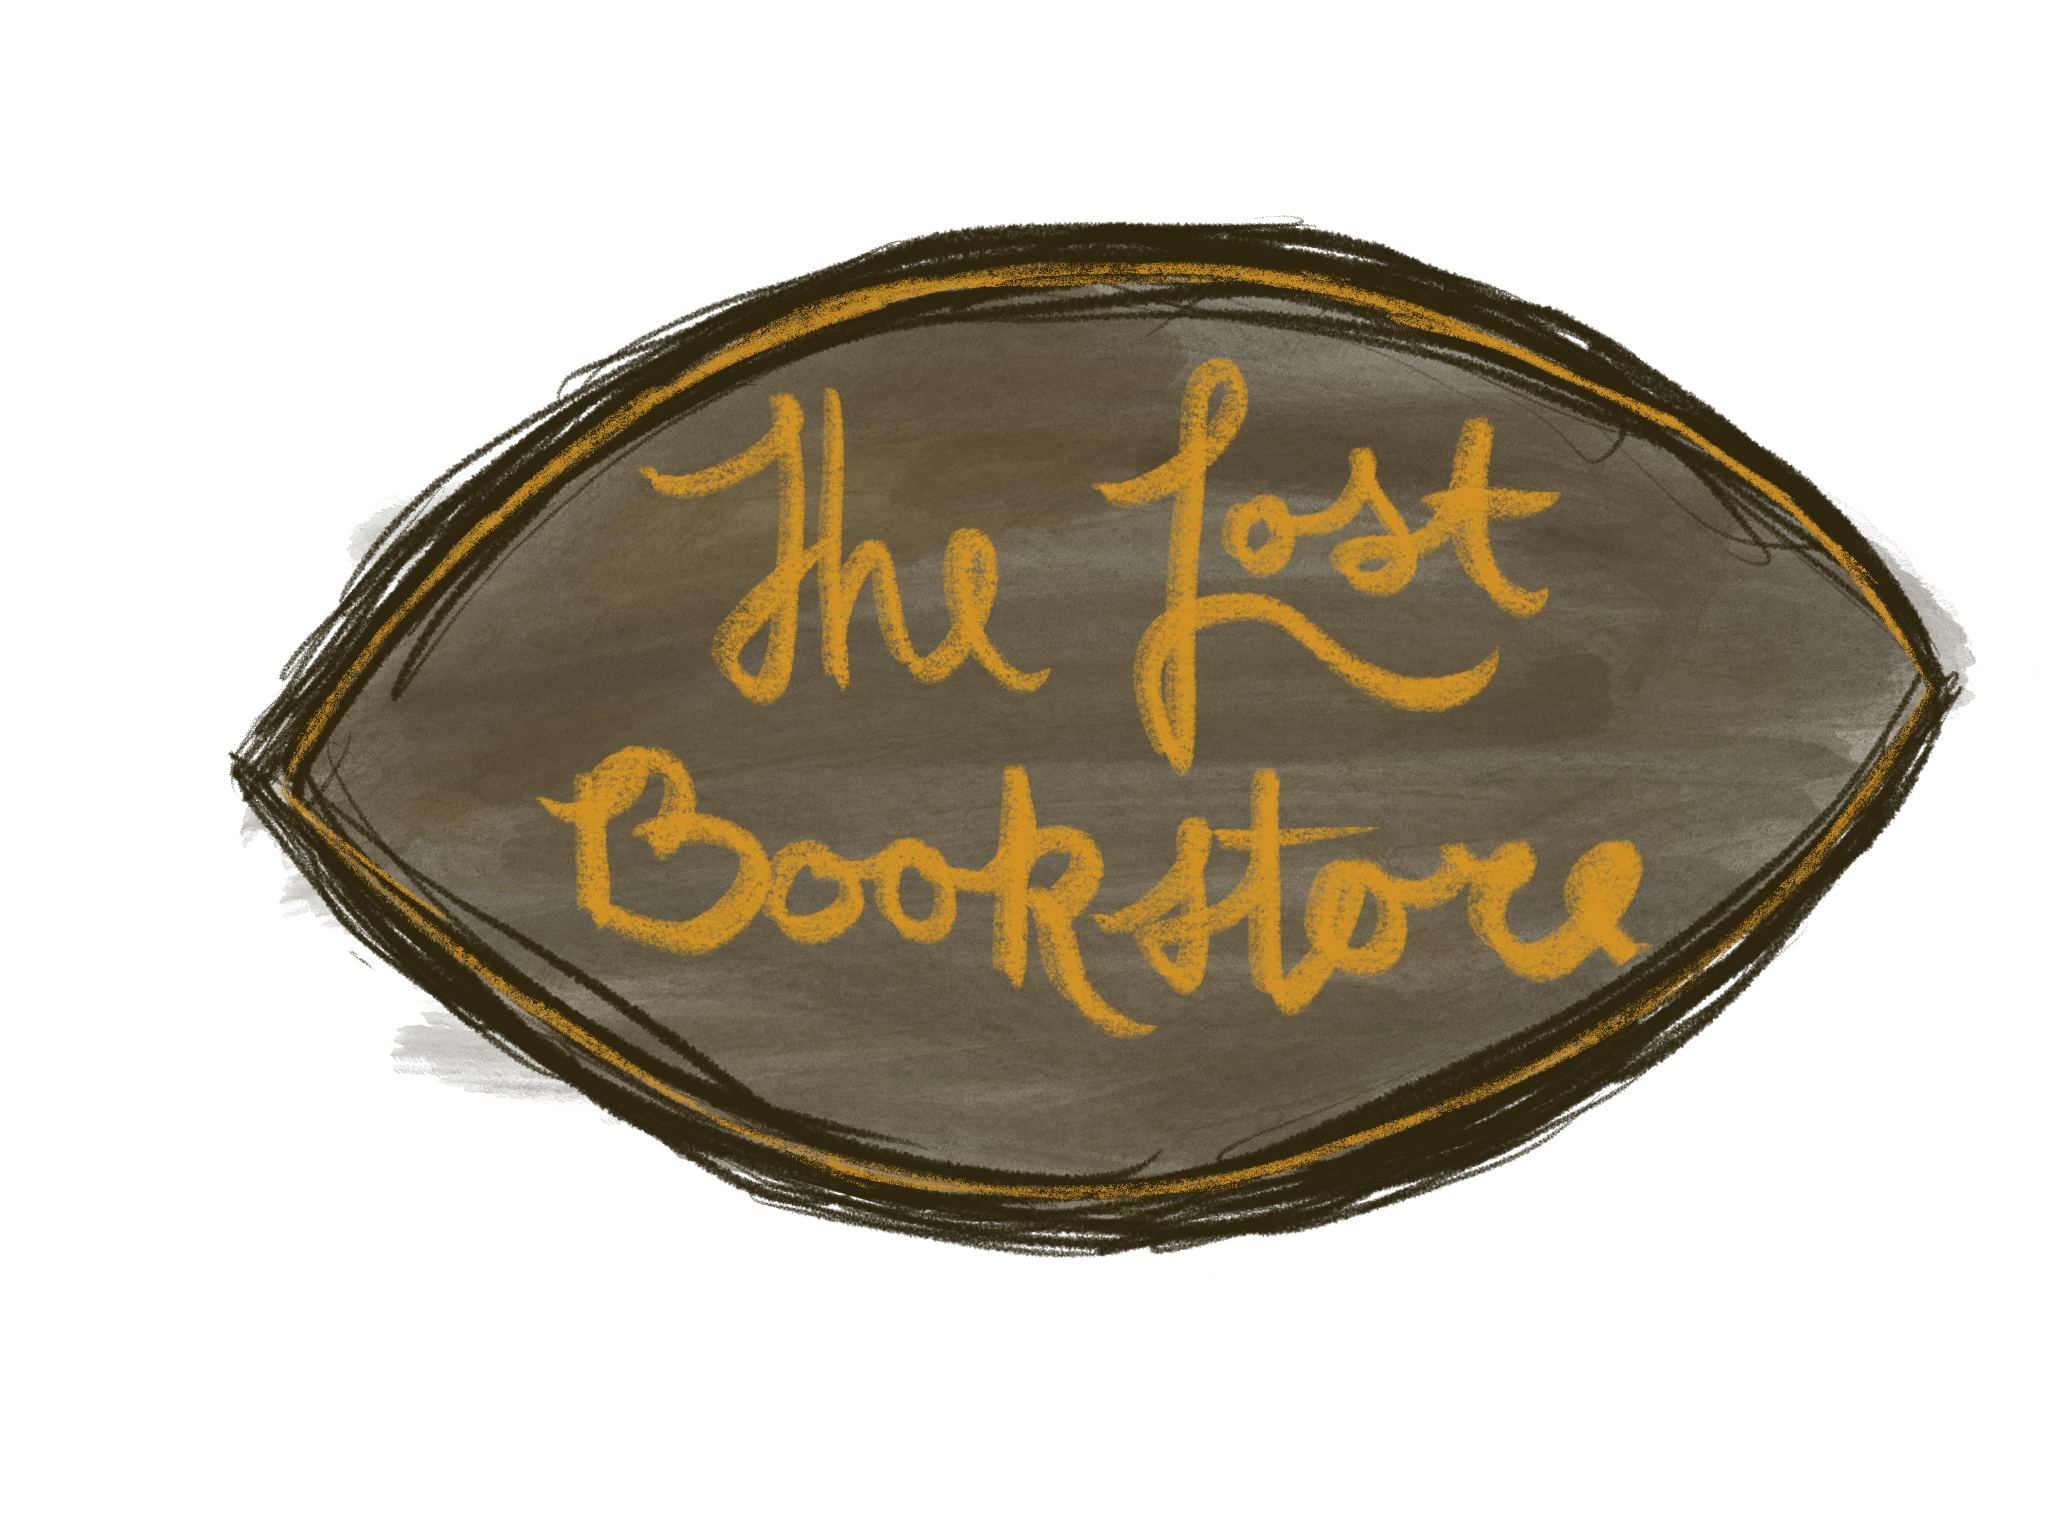 The Lost Bookstore